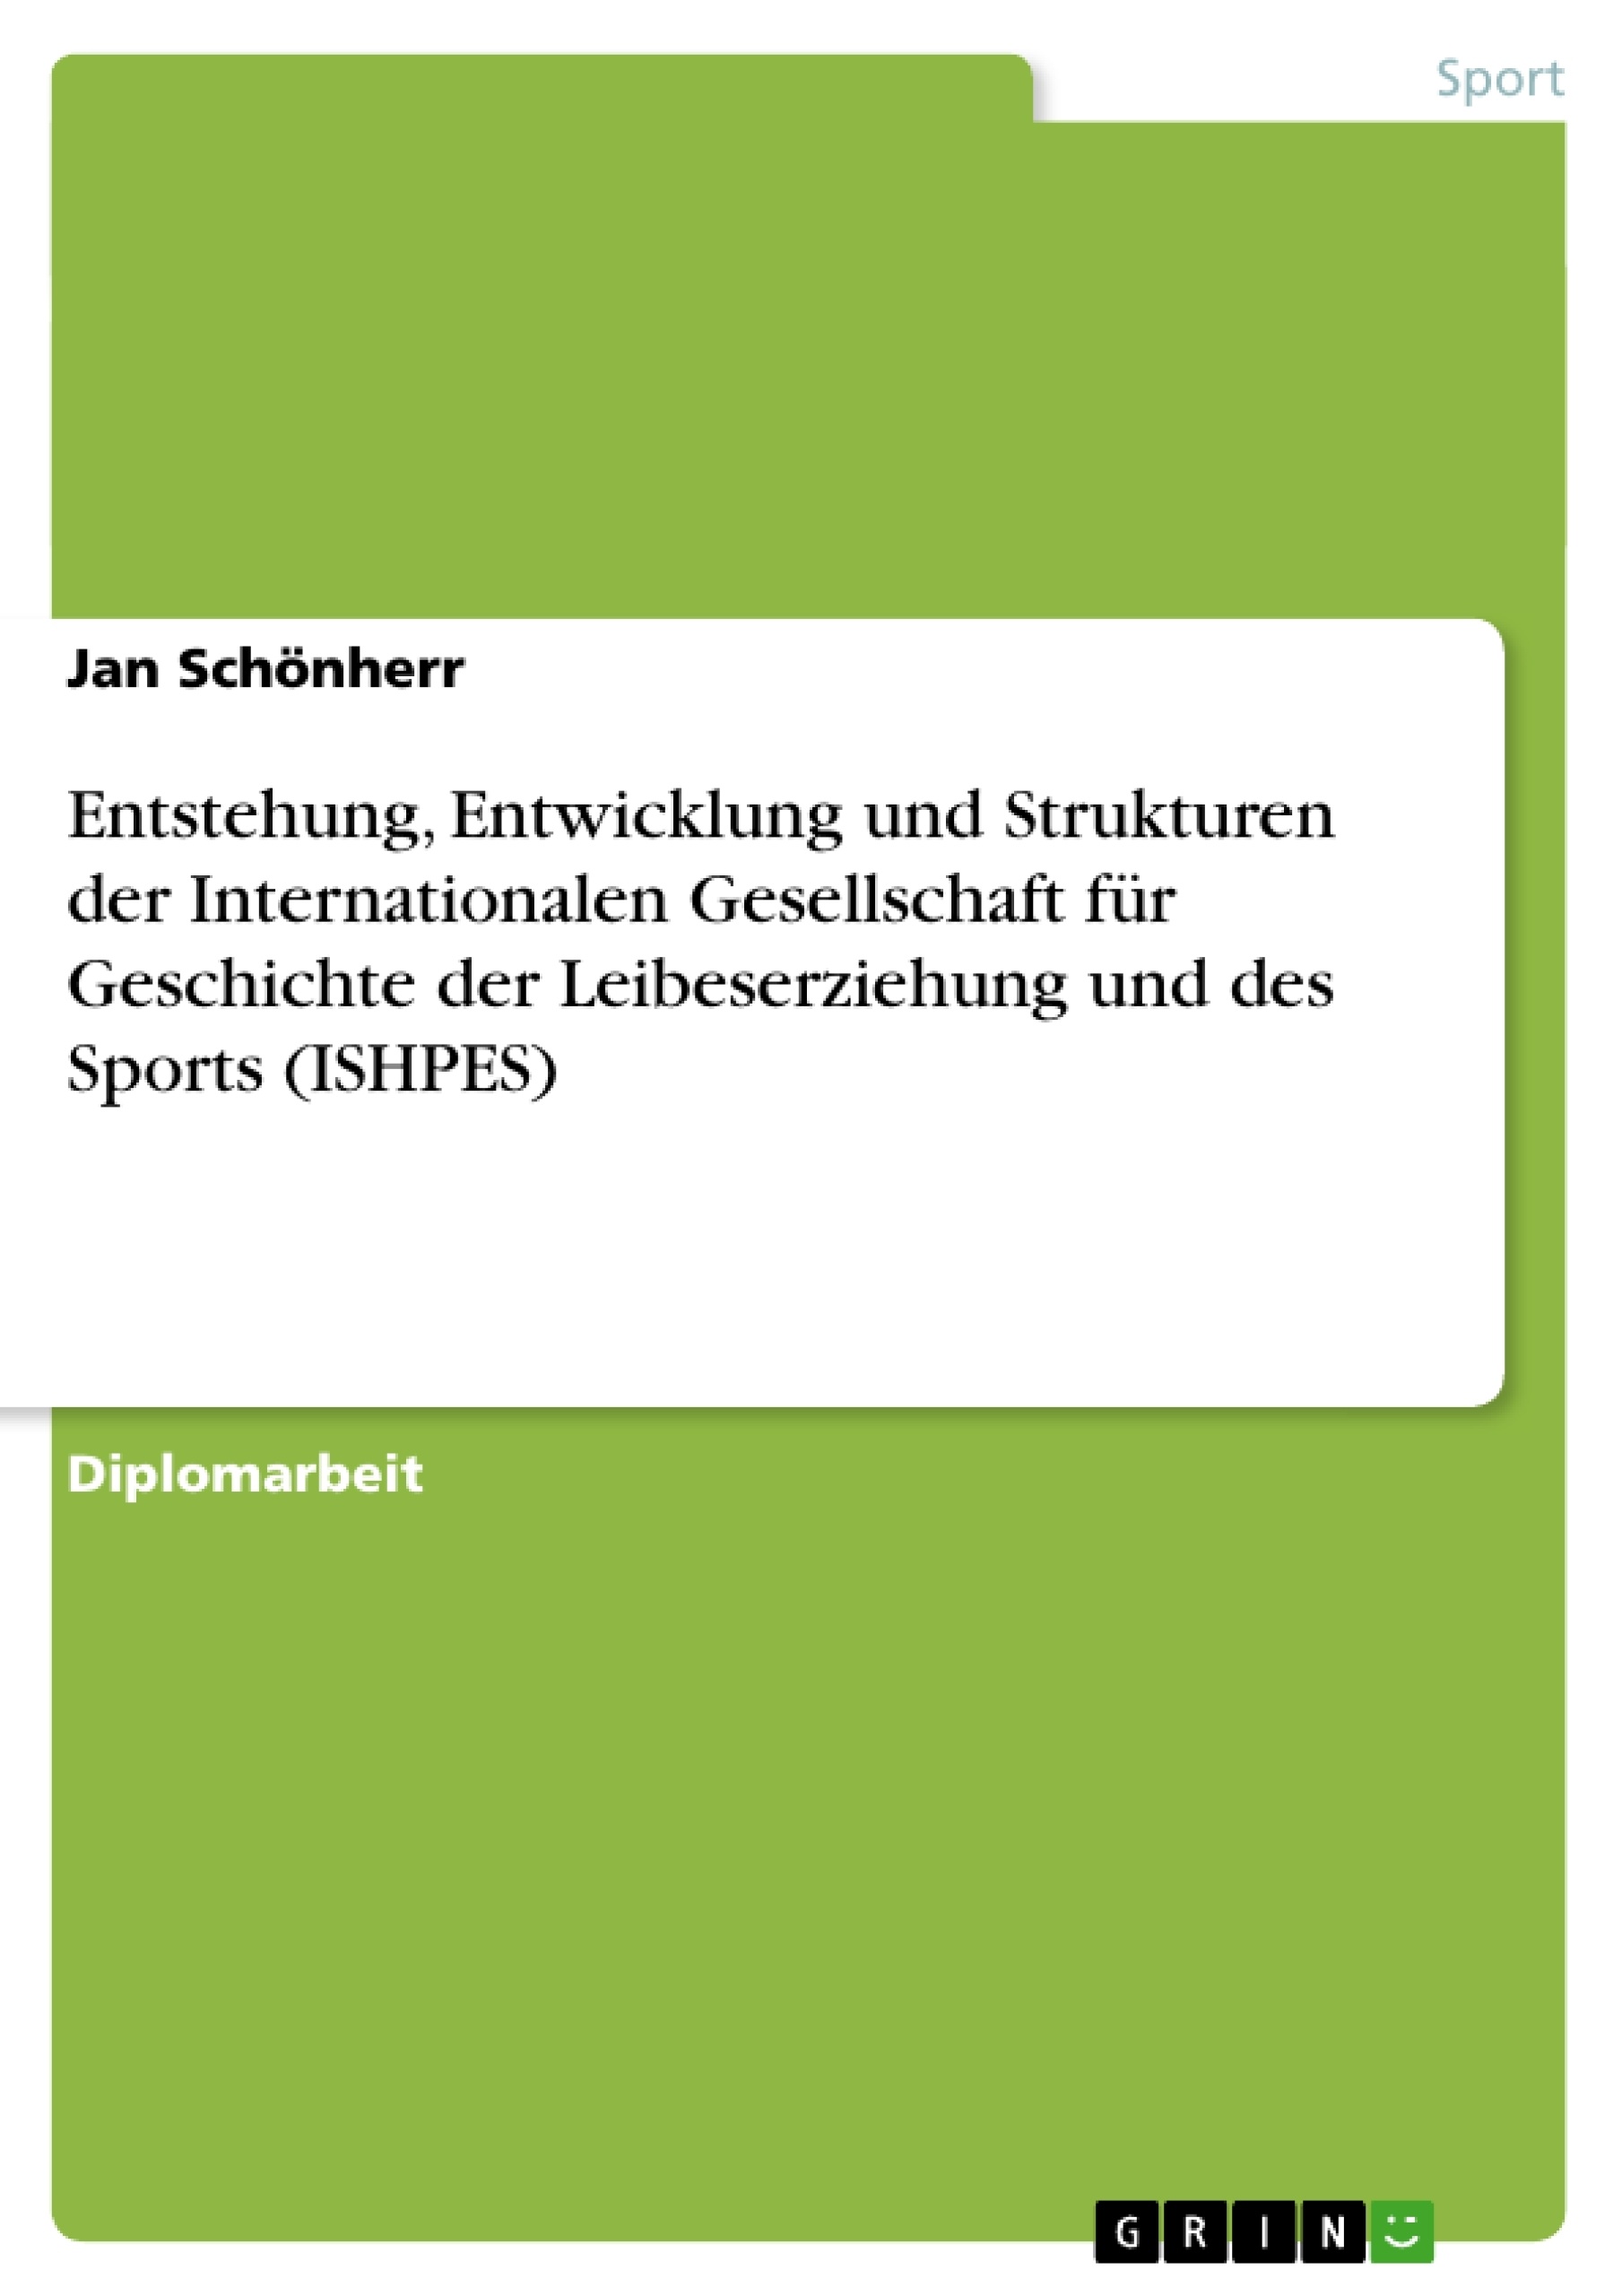 Título: Entstehung, Entwicklung und Strukturen der Internationalen Gesellschaft für Geschichte der Leibeserziehung und des Sports (ISHPES)